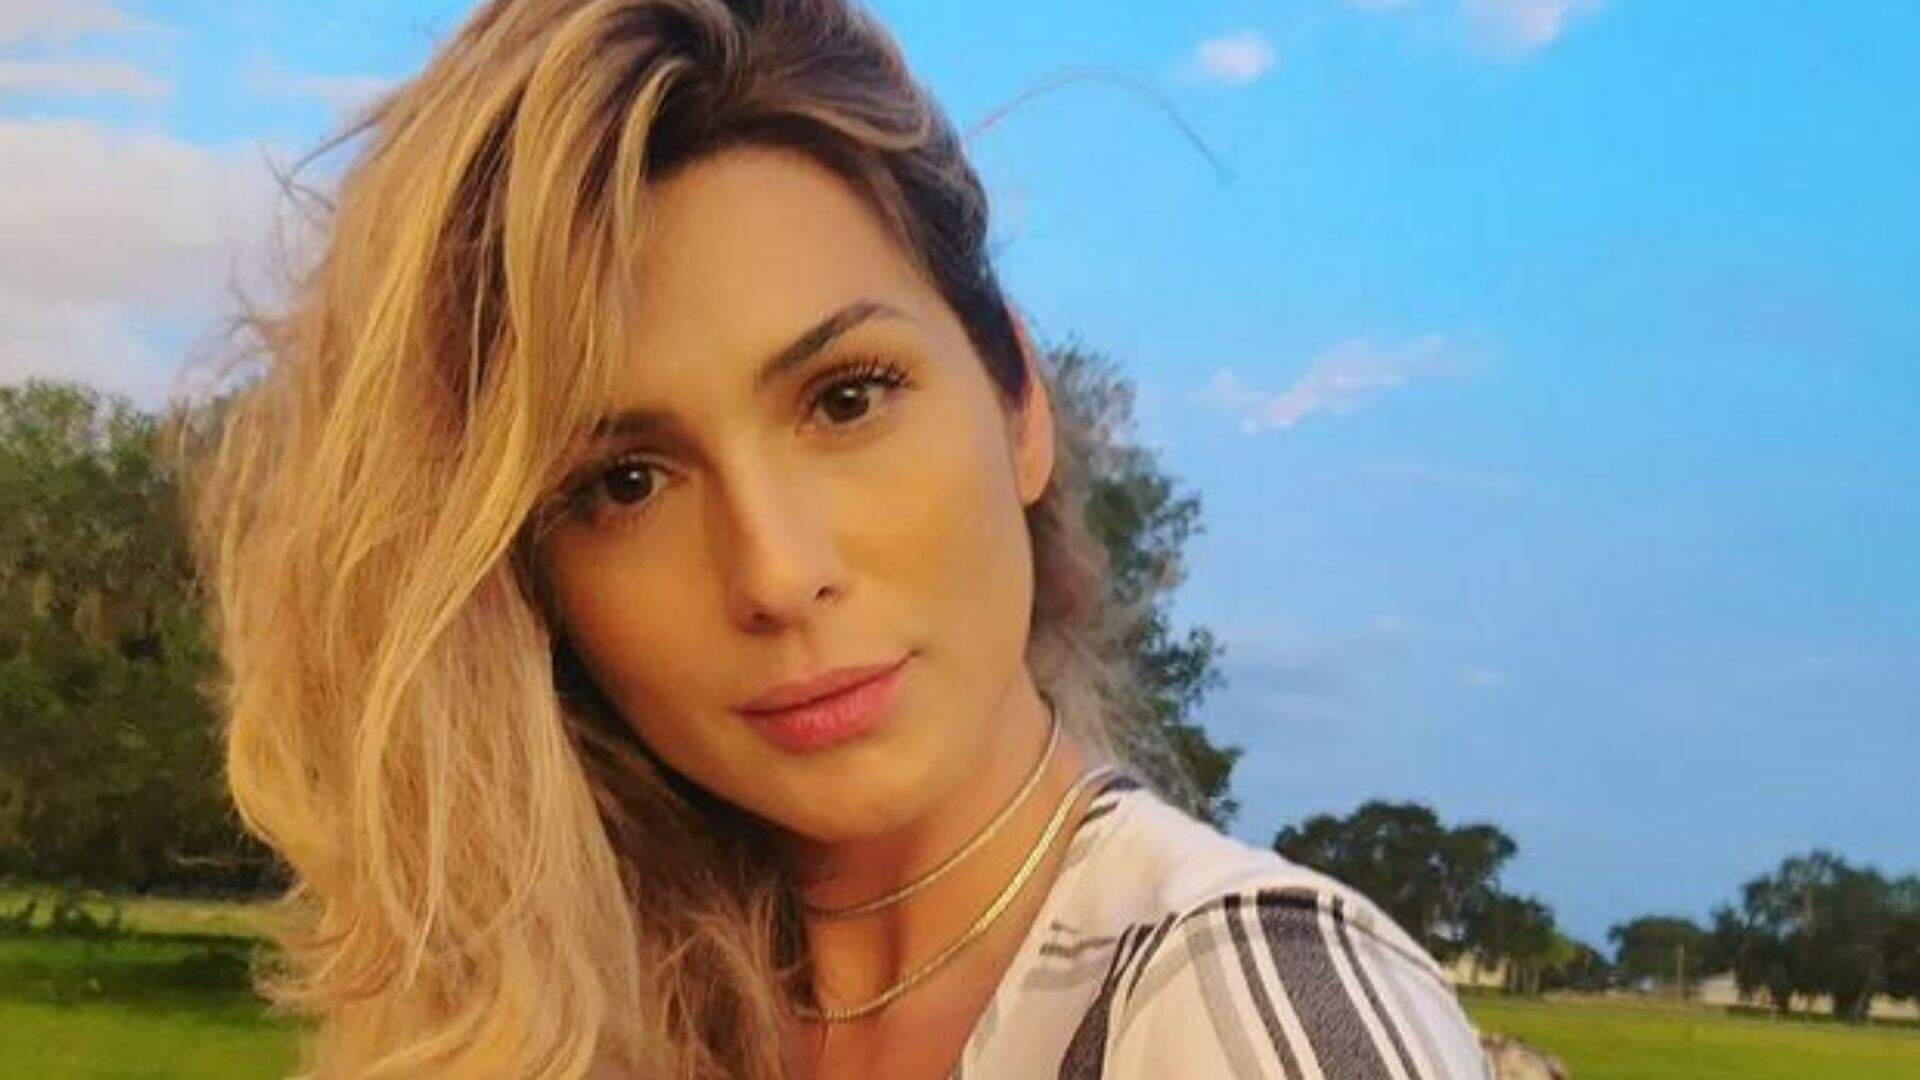 Lívia Andrade usa vestido transparente e volume das coxas com empinadinha impressiona: “Pronto” - Metropolitana FM